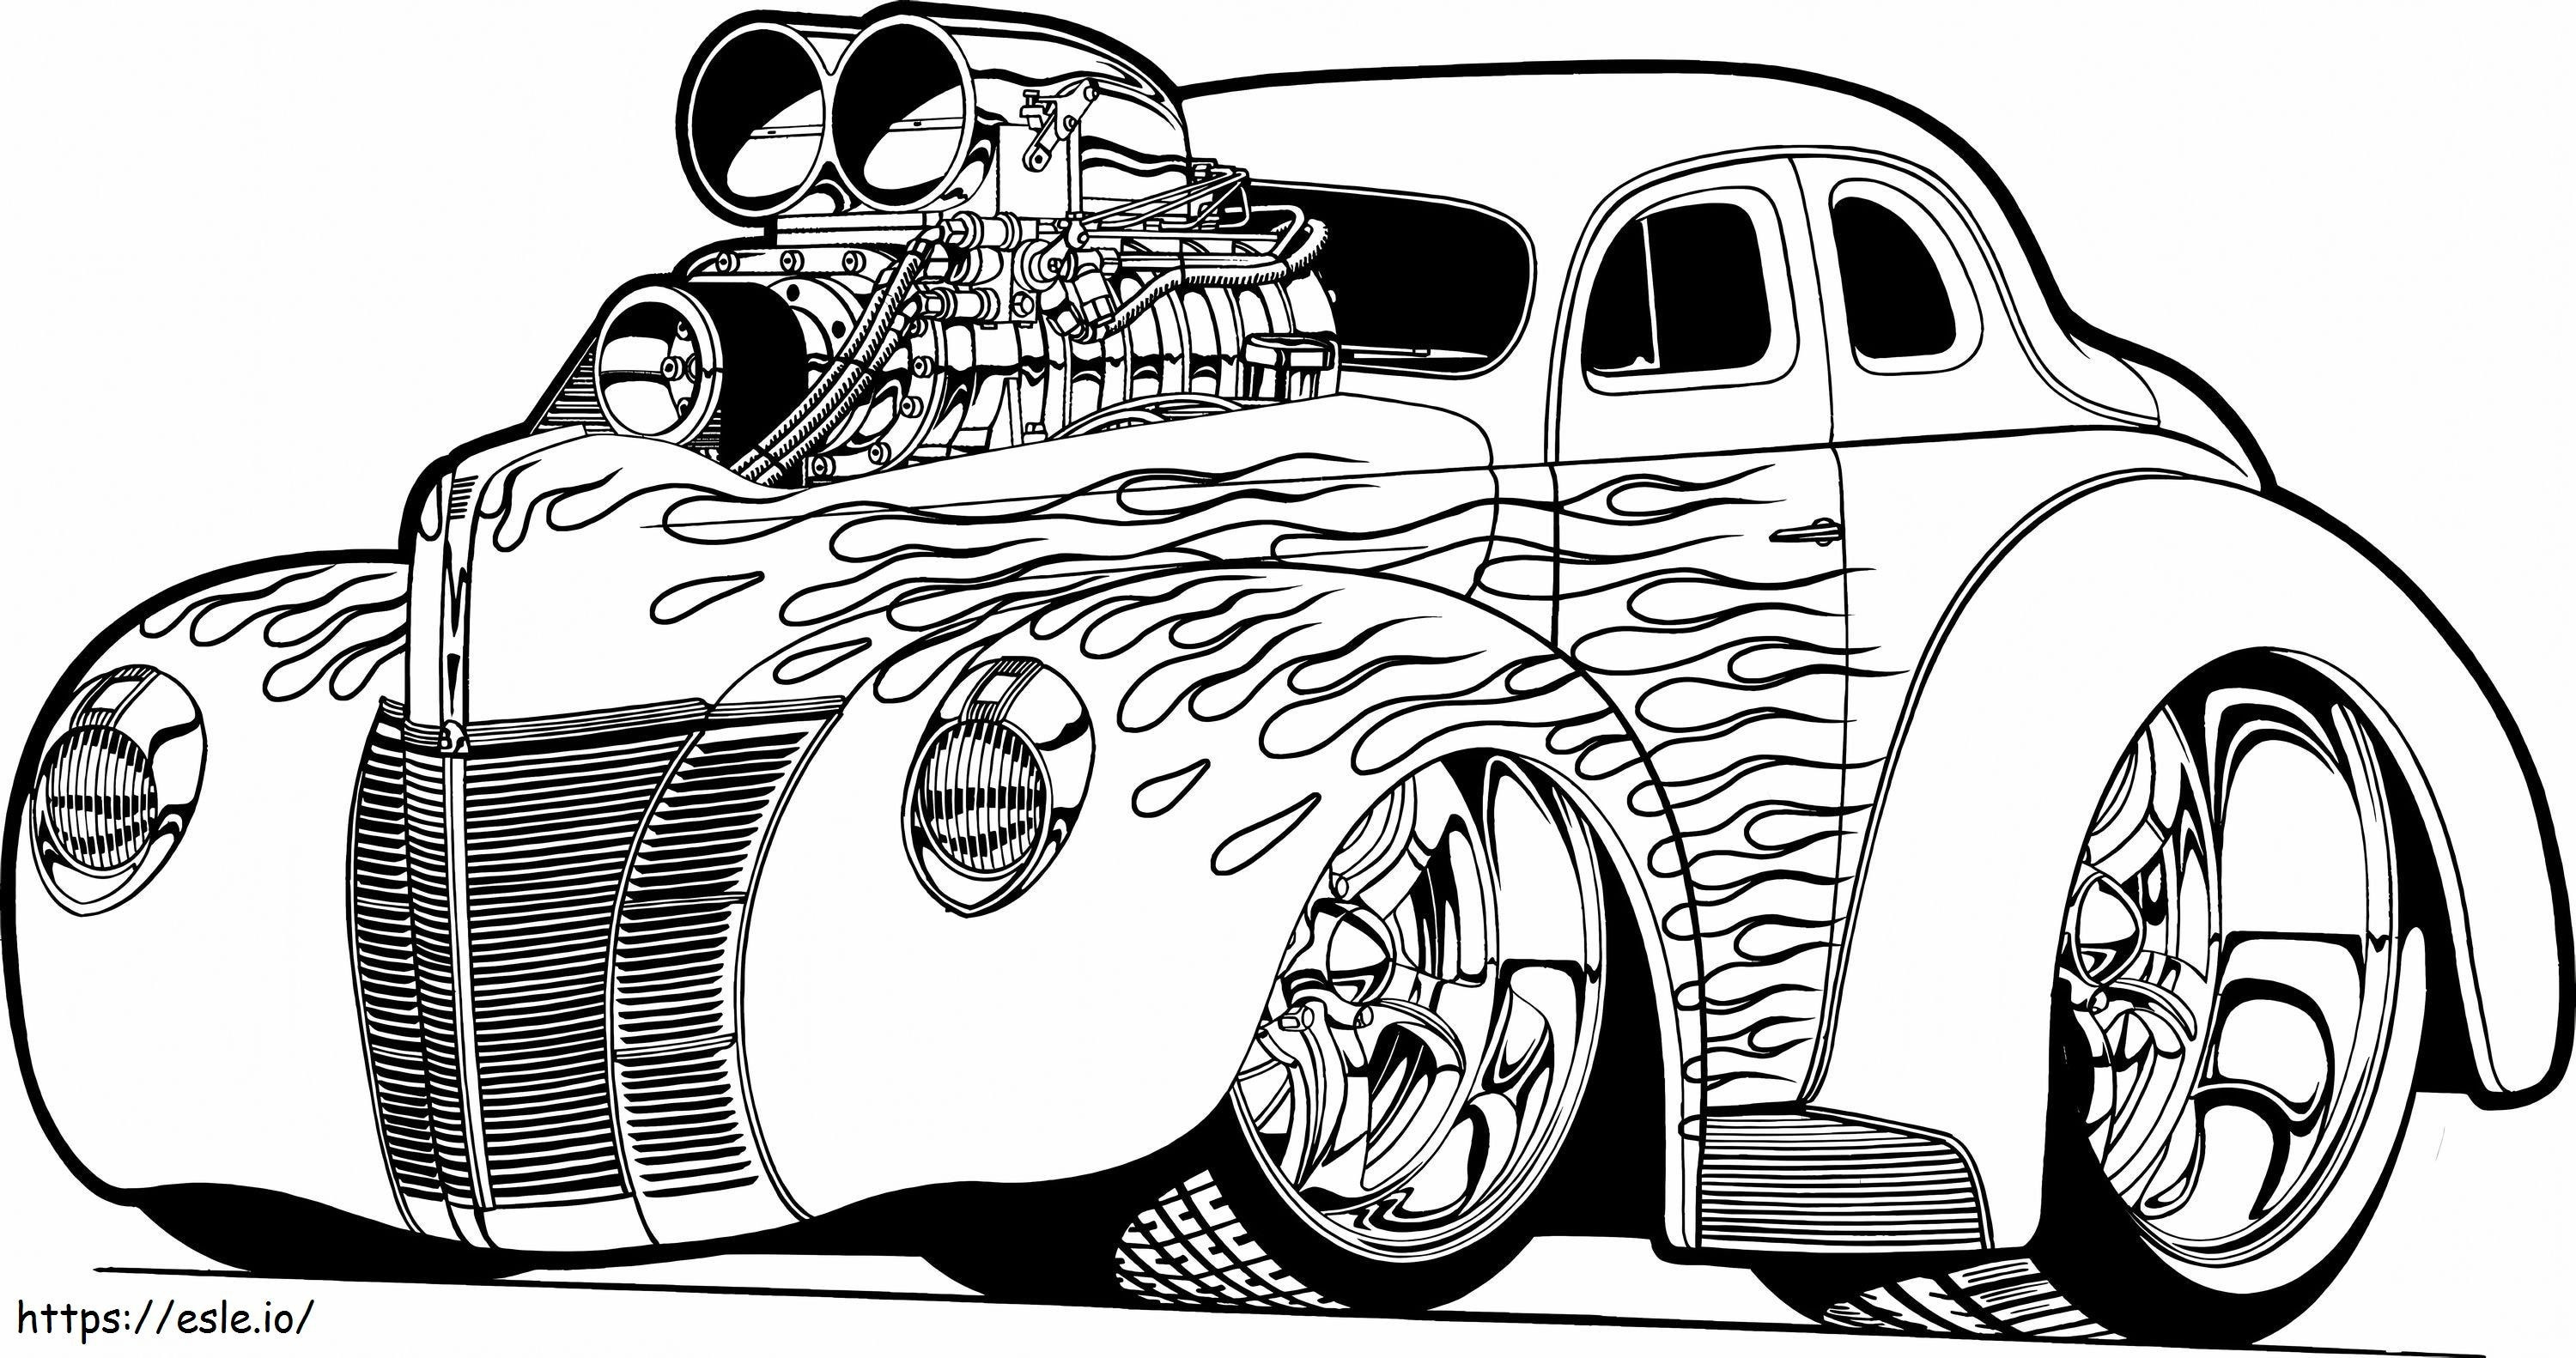 1543802471 Régi antik rajzfilmautó Cool Muscle Cars Hot Rod oldalak letöltése 1874 x 988 felbontással kifestő